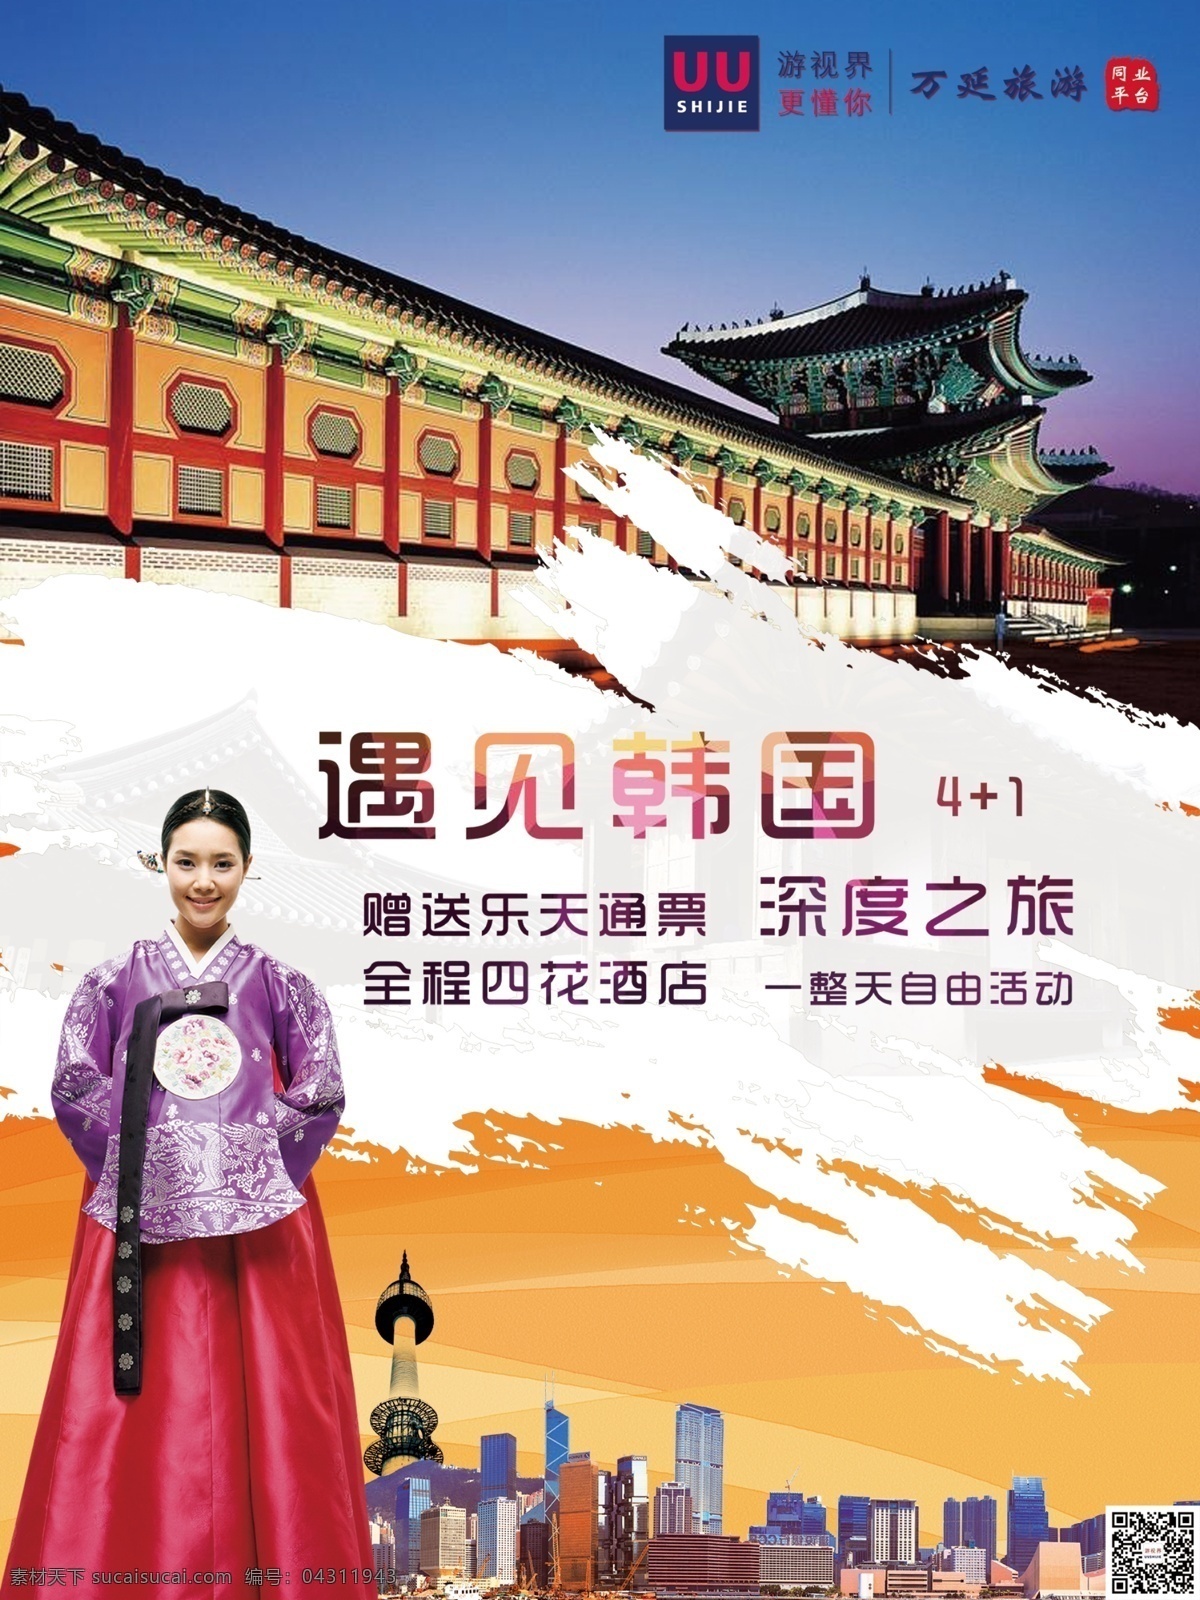 韩国旅游海报 旅游海报 出境旅游海报 韩国海报